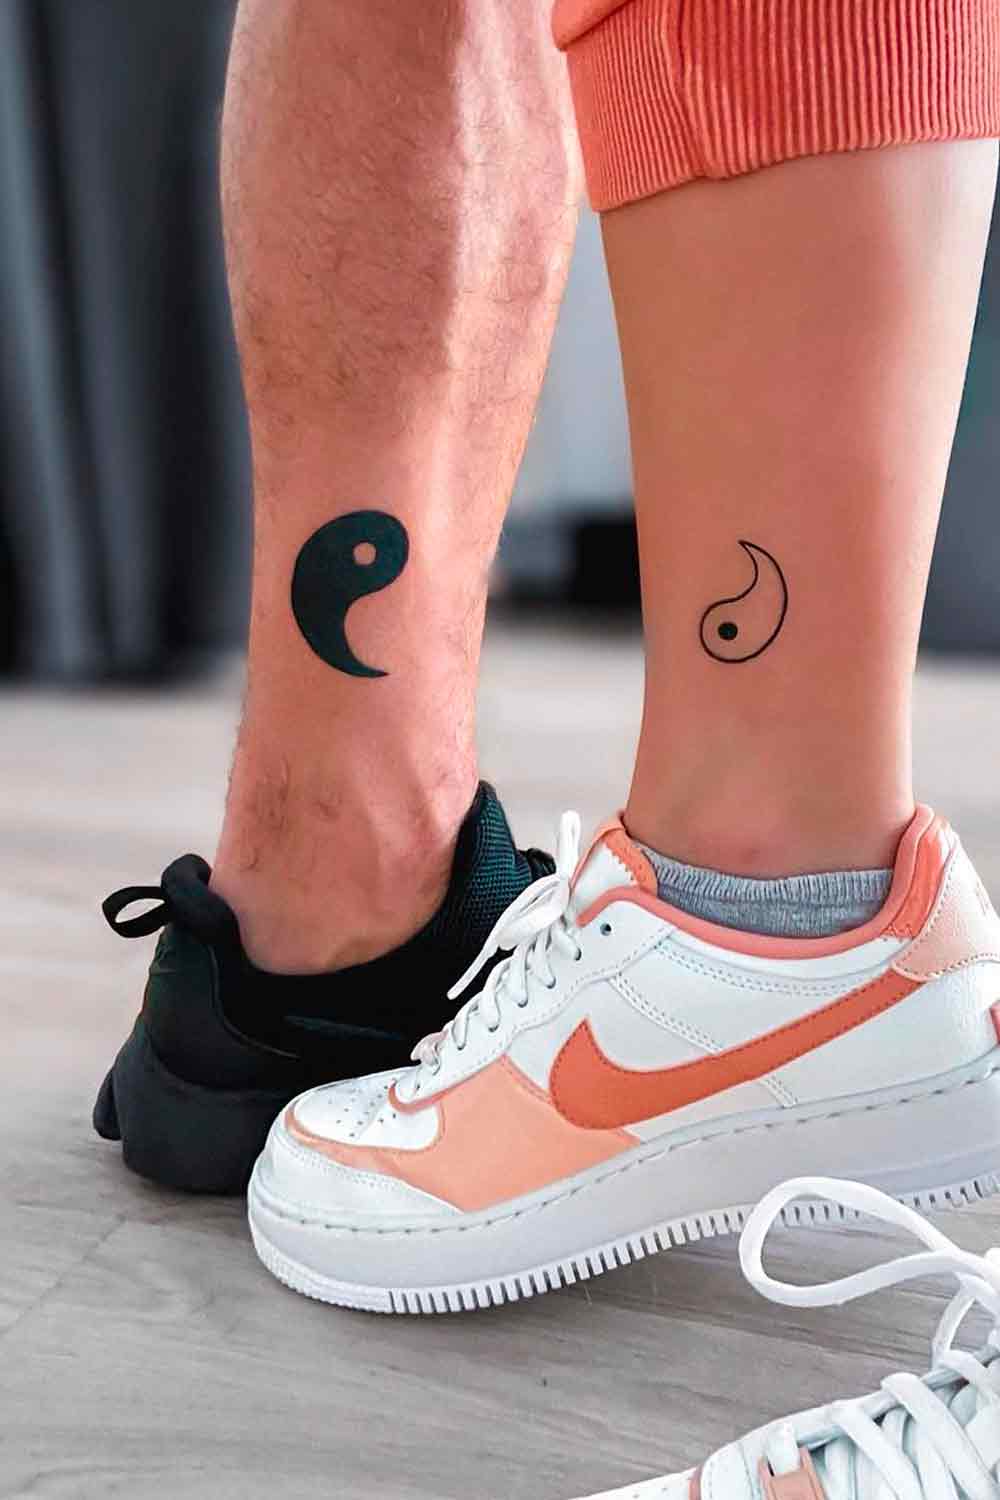 Tatuagens-em-casal-4 